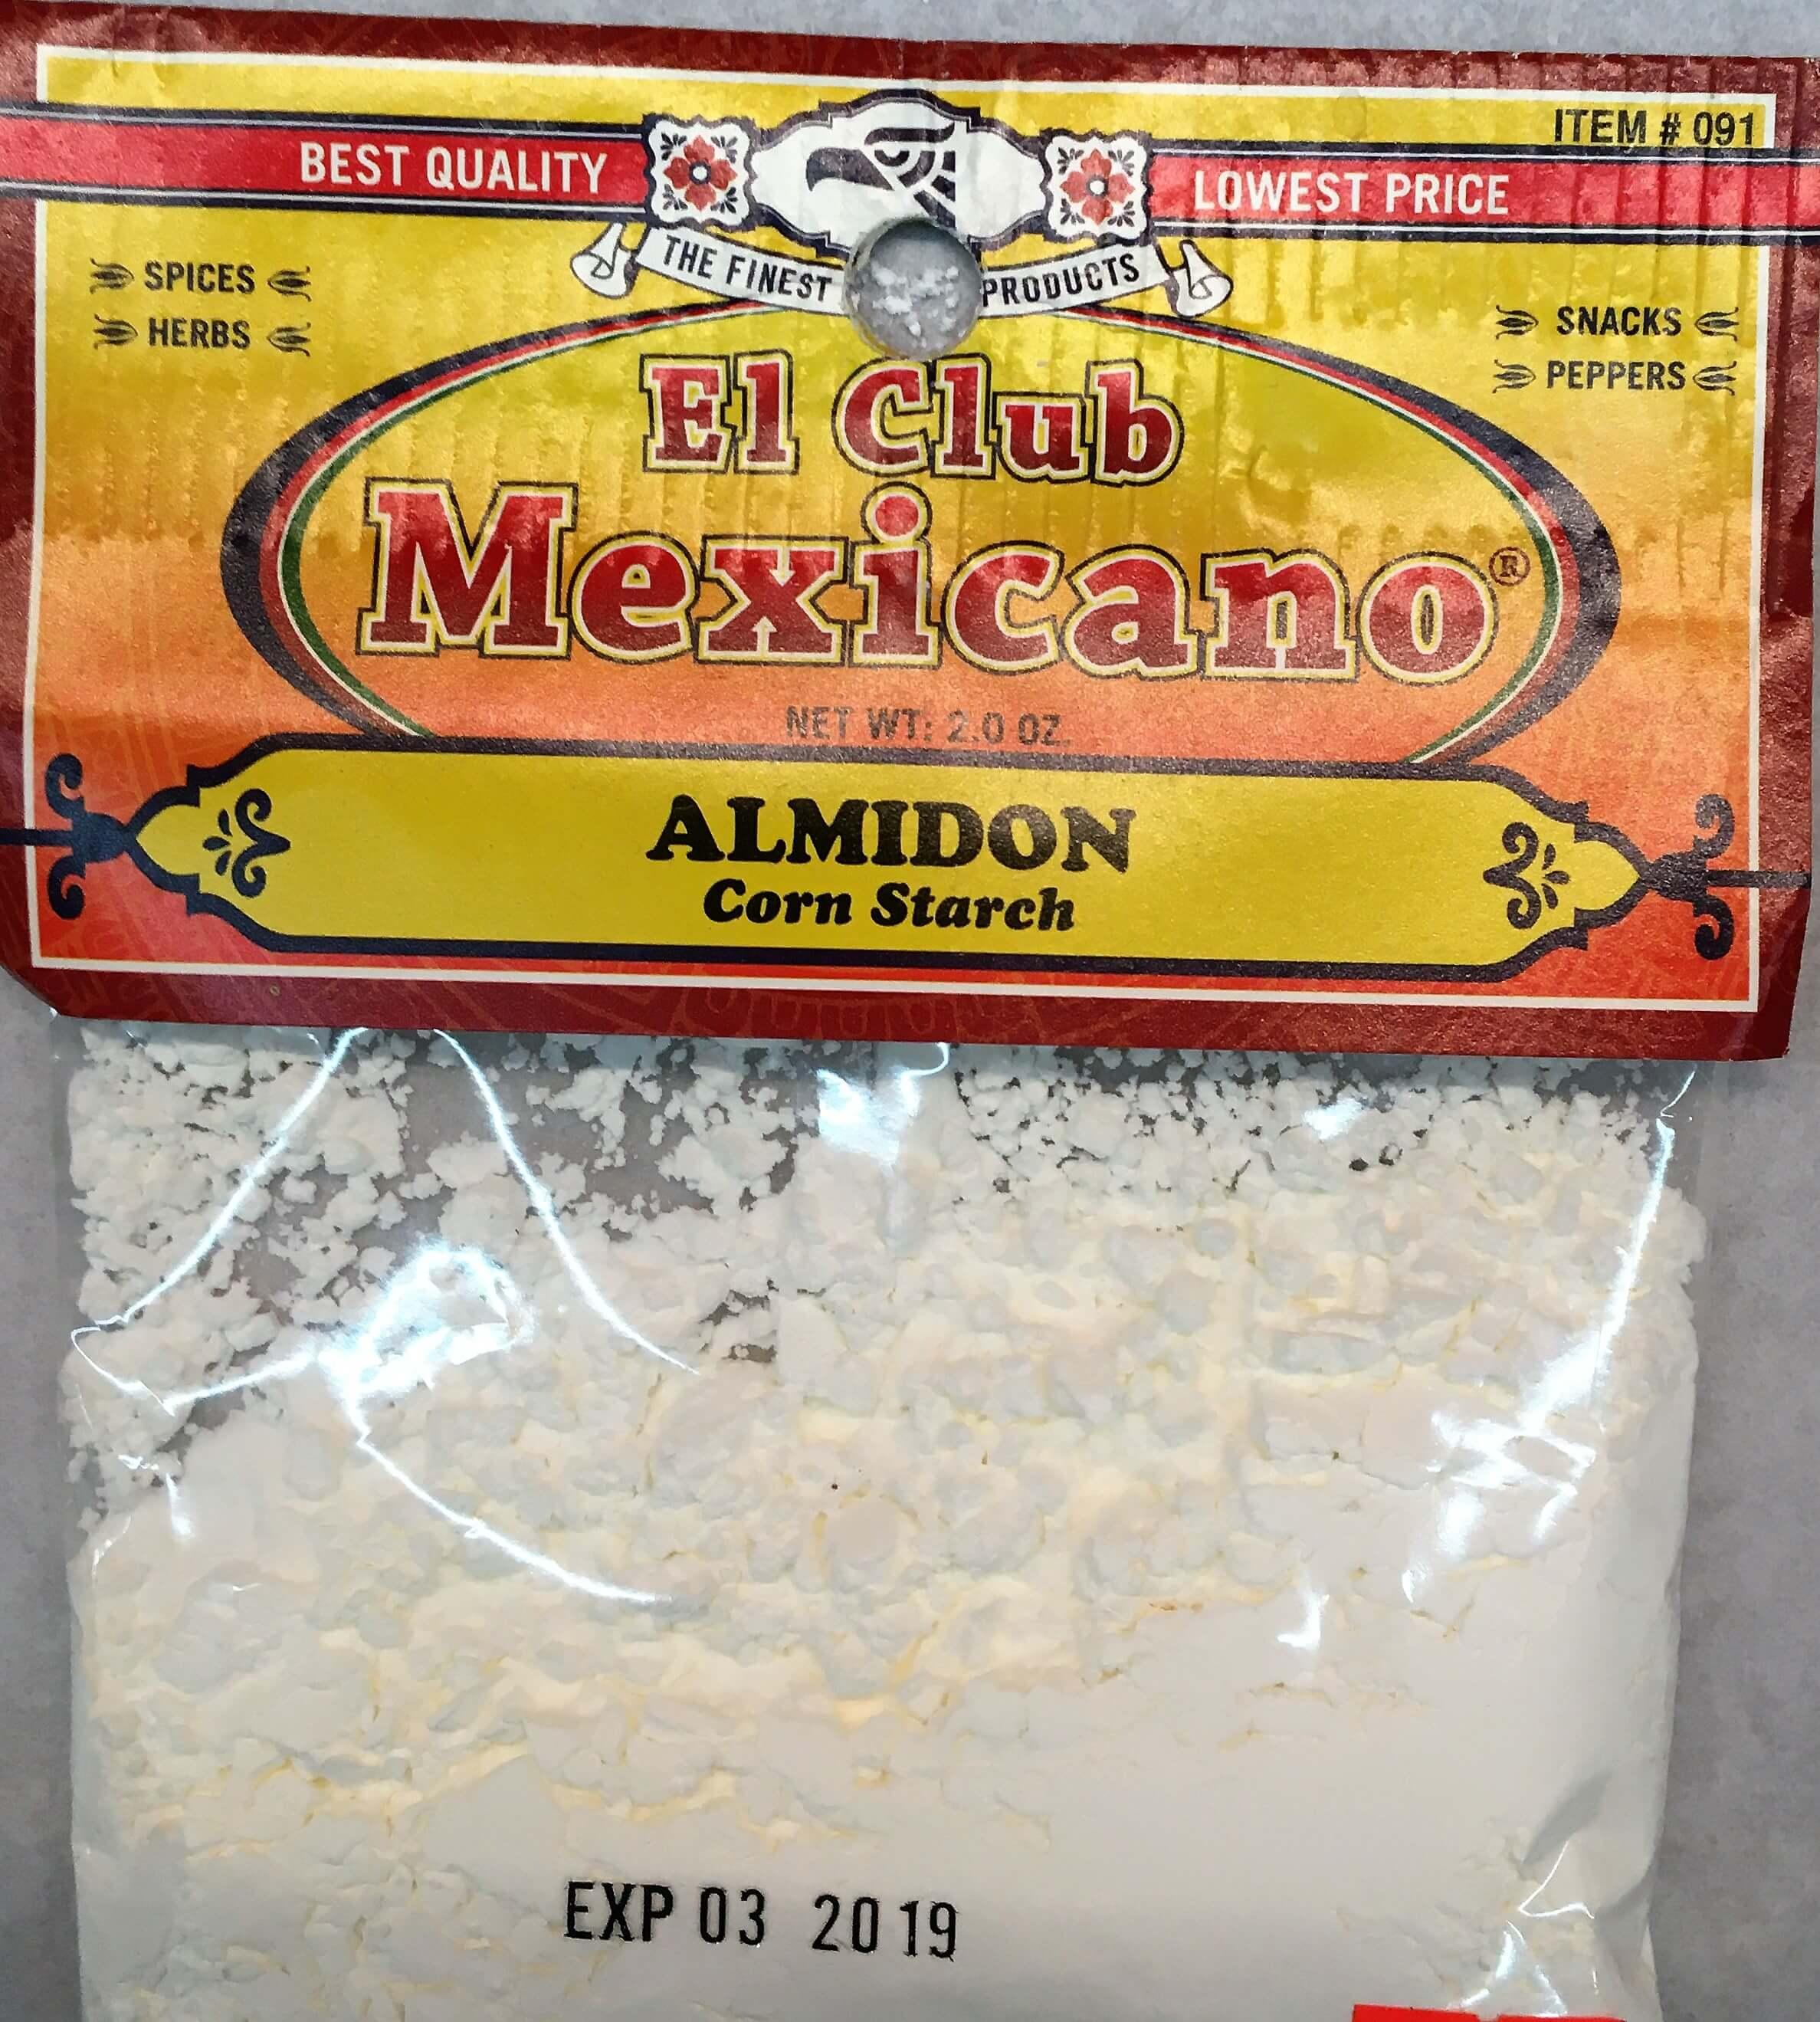 El Club Mexicano - Corn Starch 2.0 oz.